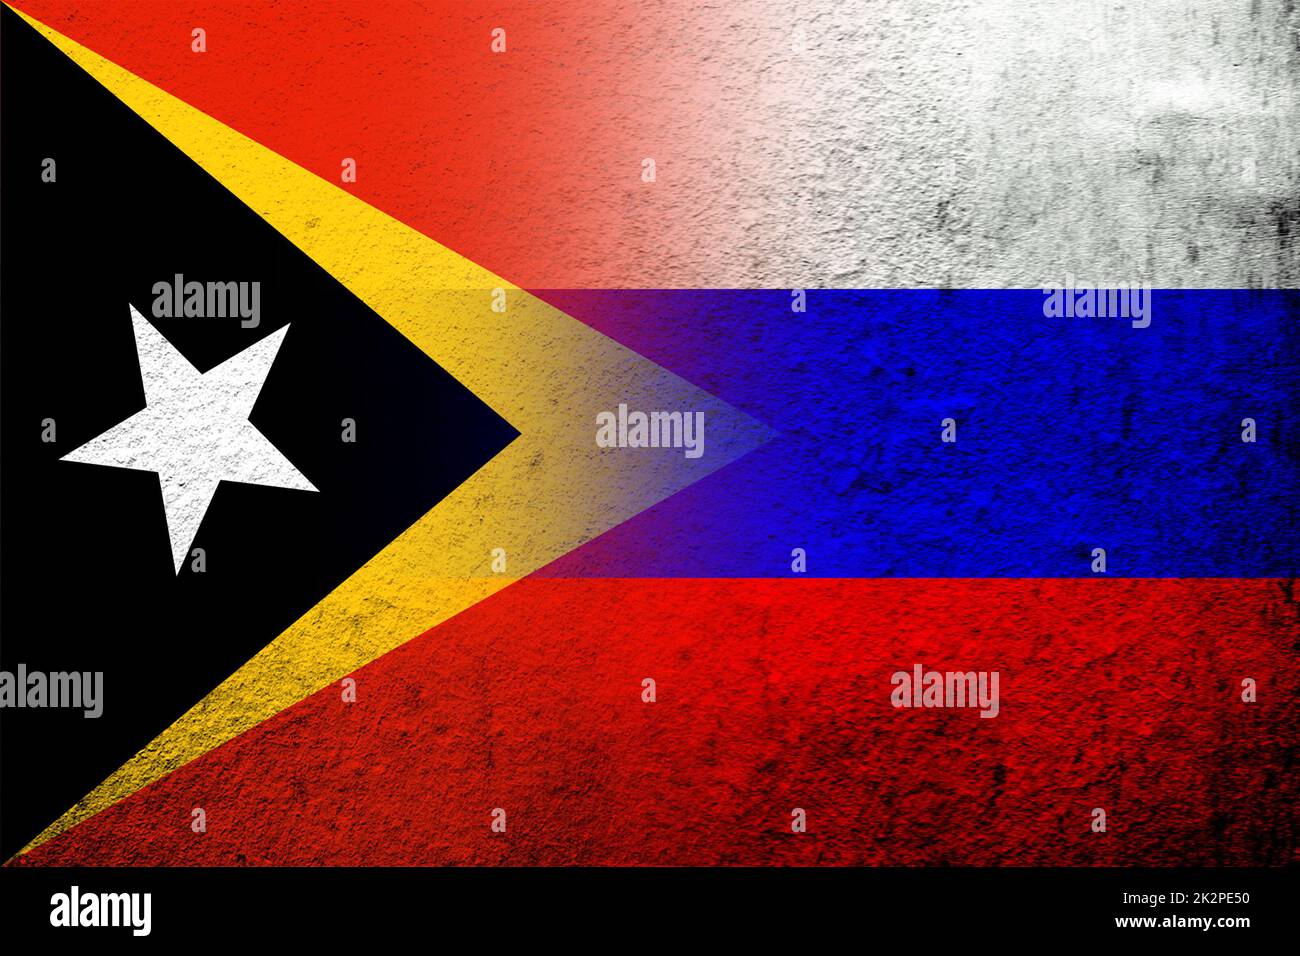 Nationalflagge der Russischen Föderation mit der Demokratischen Republik Timor-Leste Osttimor Nationalflagge. Grungen Hintergrund Stockfoto